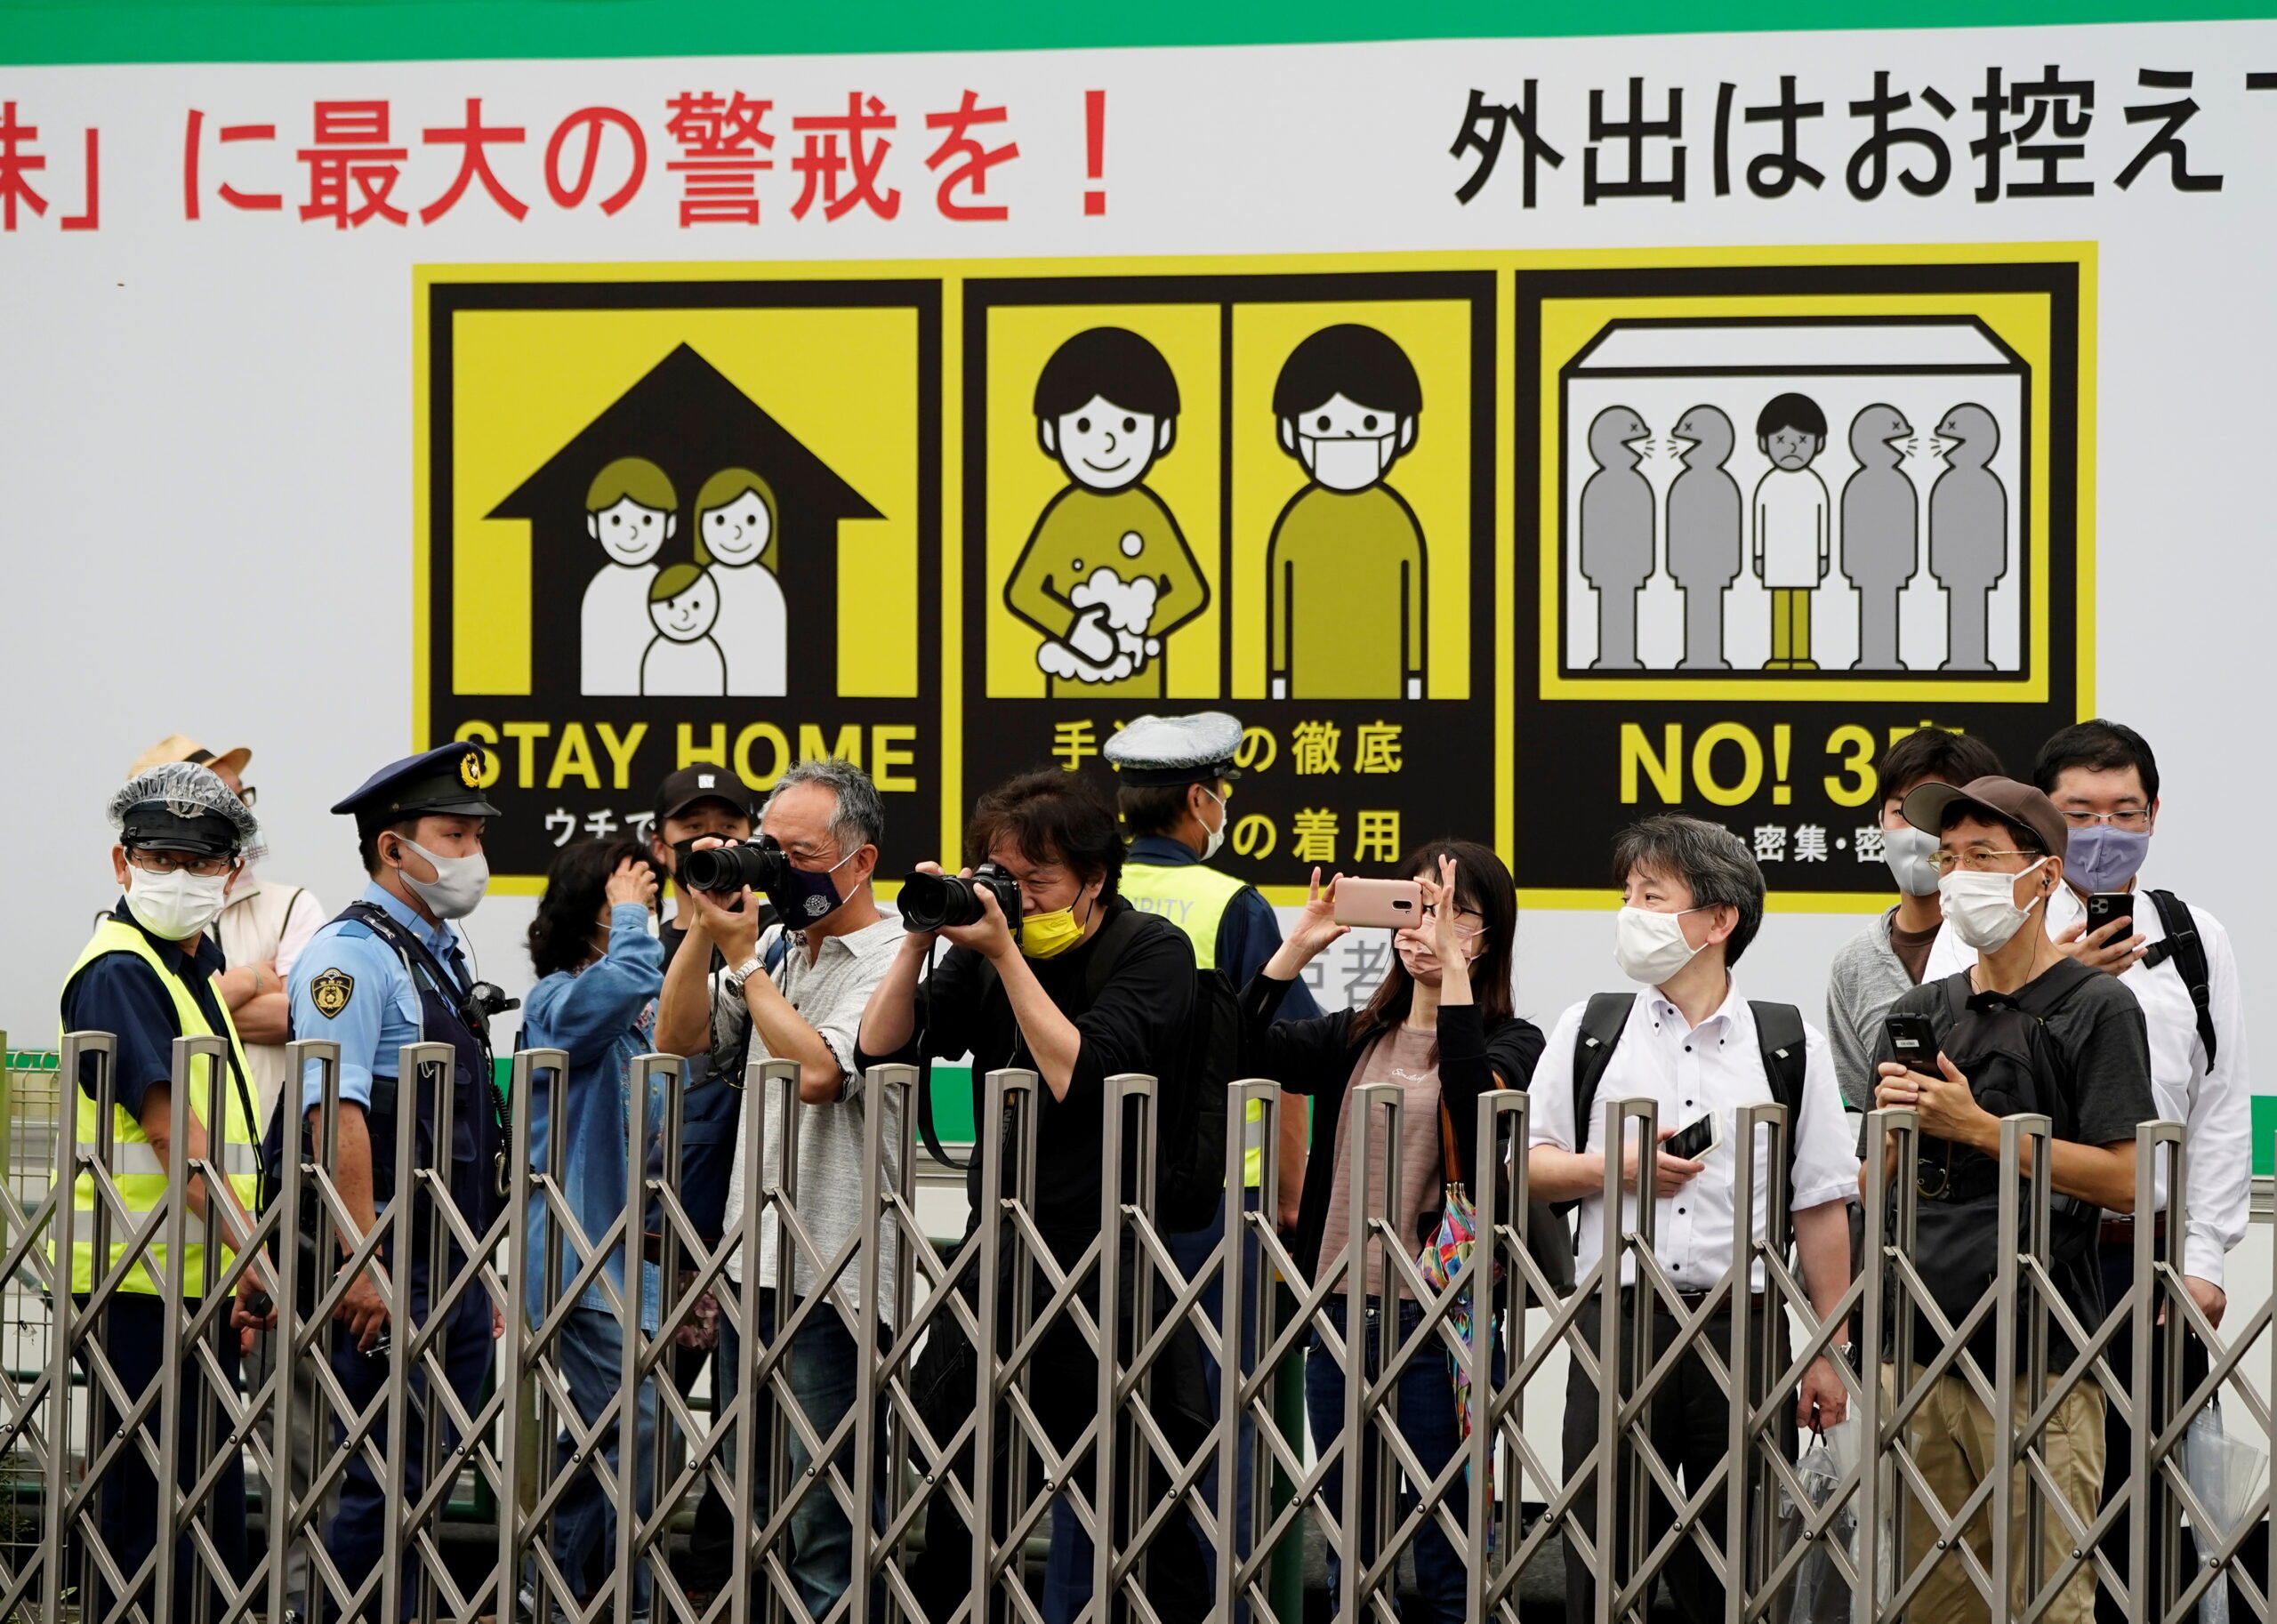 โตเกียว วิกฤตโควิด สถานพยาบาลเร่งเพิ่มเตียงผู้ป่วย – ต่างประเทศ